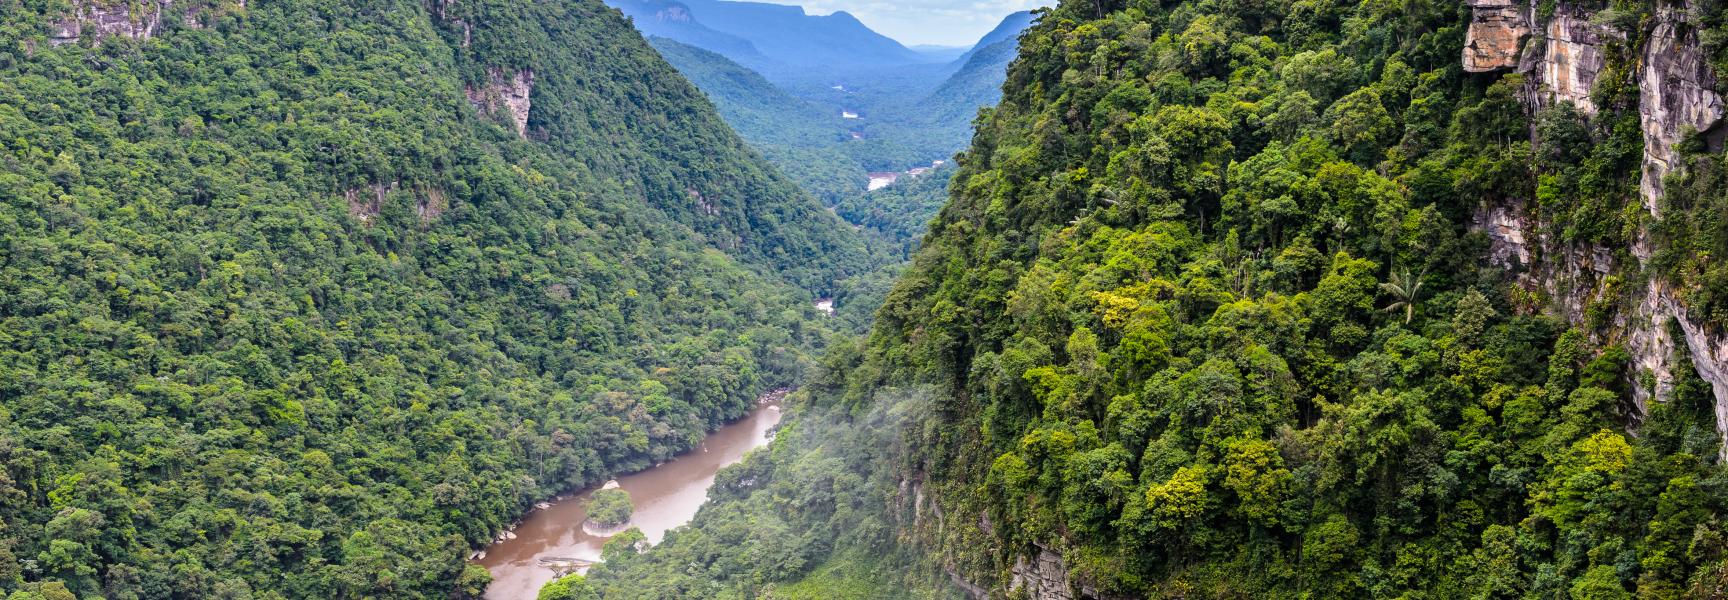 Paisaje de río y montaña en Guyana